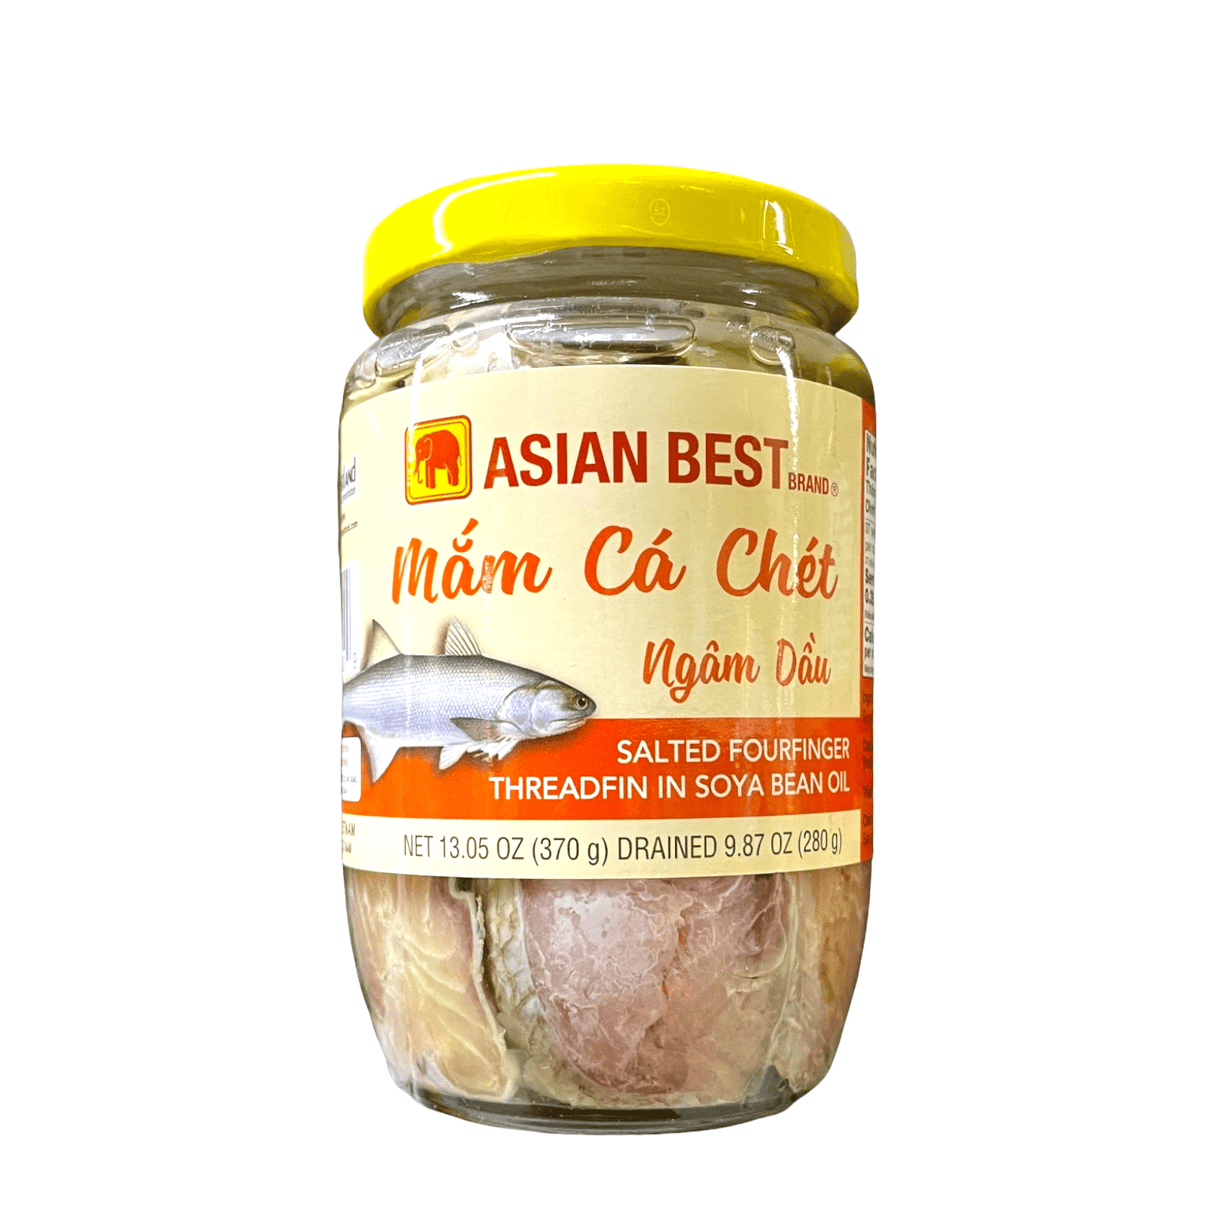 Asian Best Brand Salted Fourfinger Threadfin (Mam Ca Chet Ngam Dau)